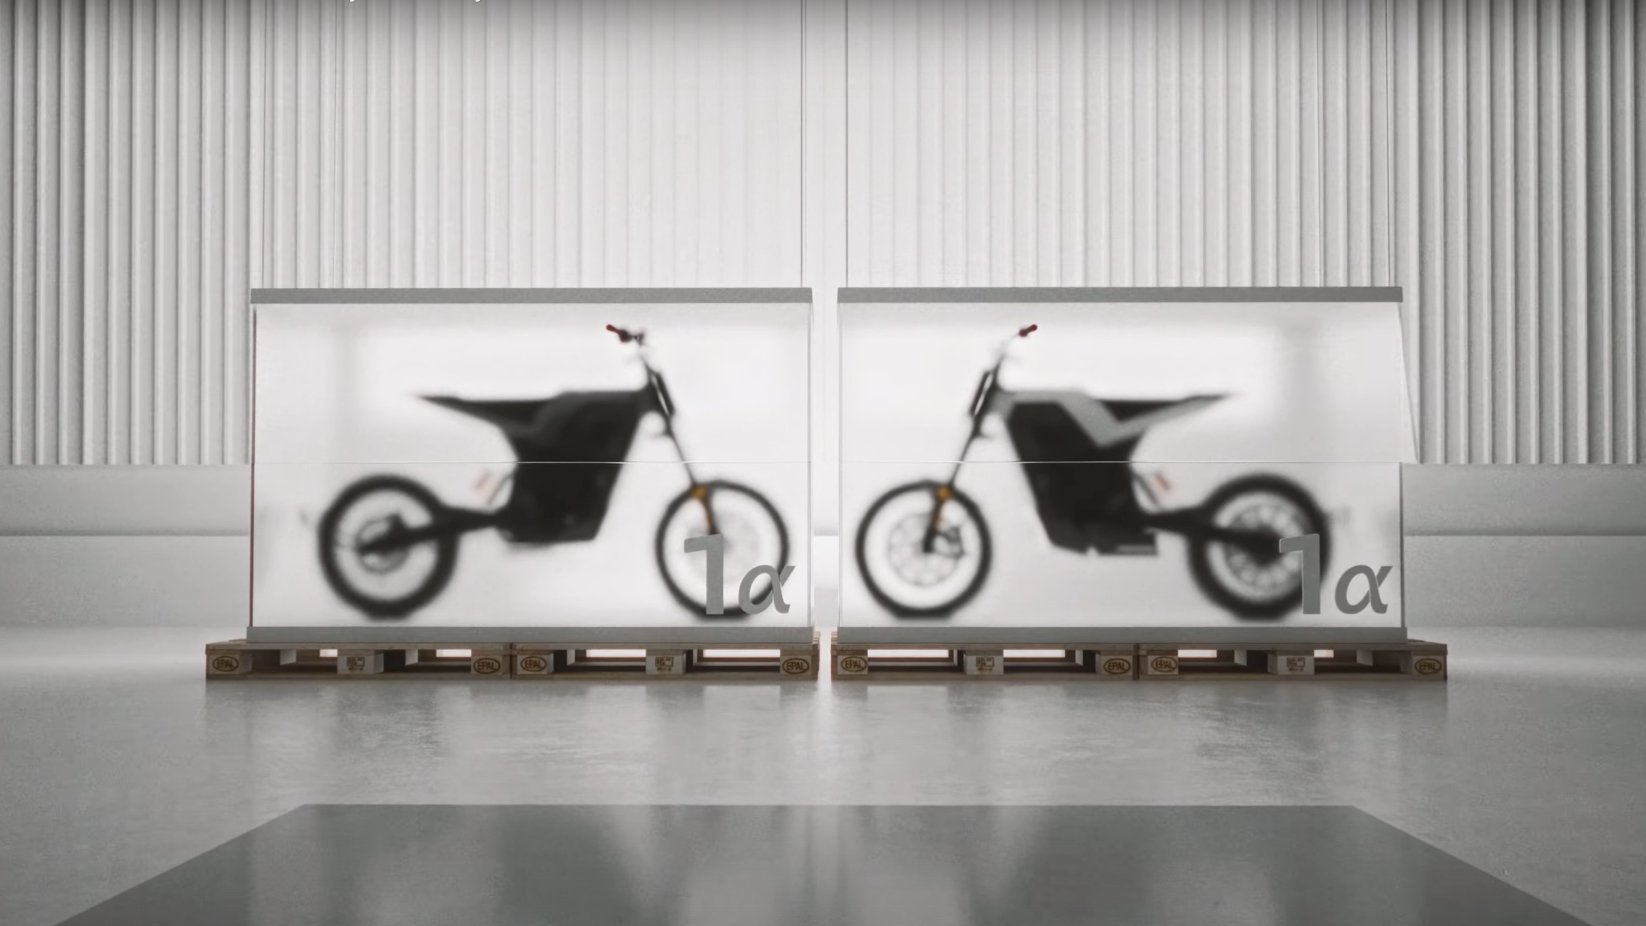 Jeux video Cette moto électrique conçue avec Peugeot Motocycles interpelle par son étrange nom